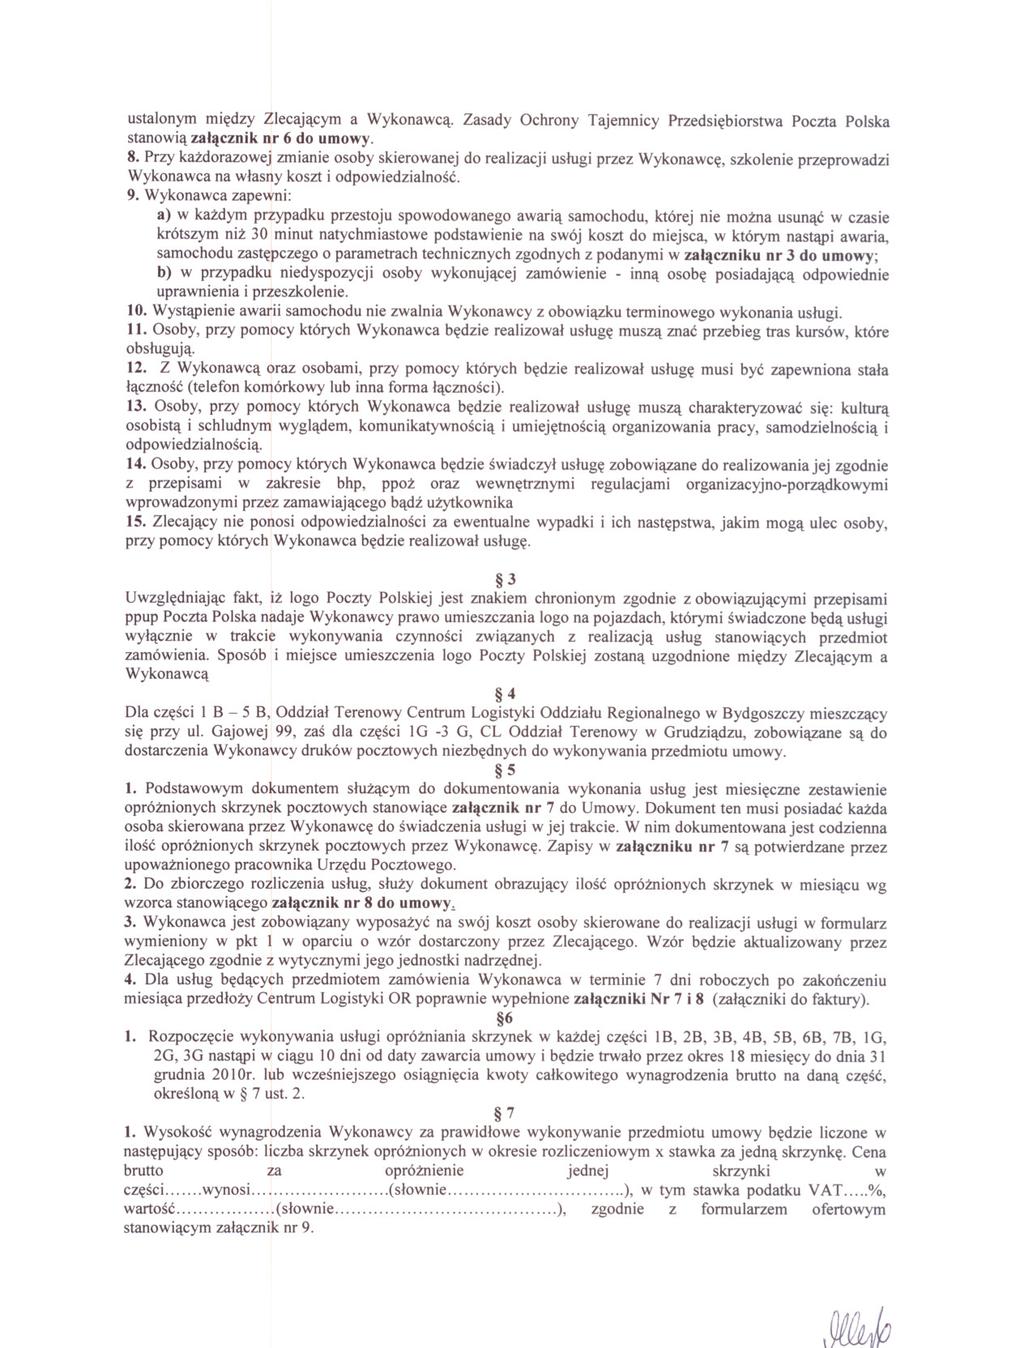 I~ ustalonym miedzy Zlecajacym a Wykonawca. Zasady Ochrony Tajemnicy Przedsiebiorstwa Poczta Polska stanowia zalacznik nr 6 do umowy. 8.